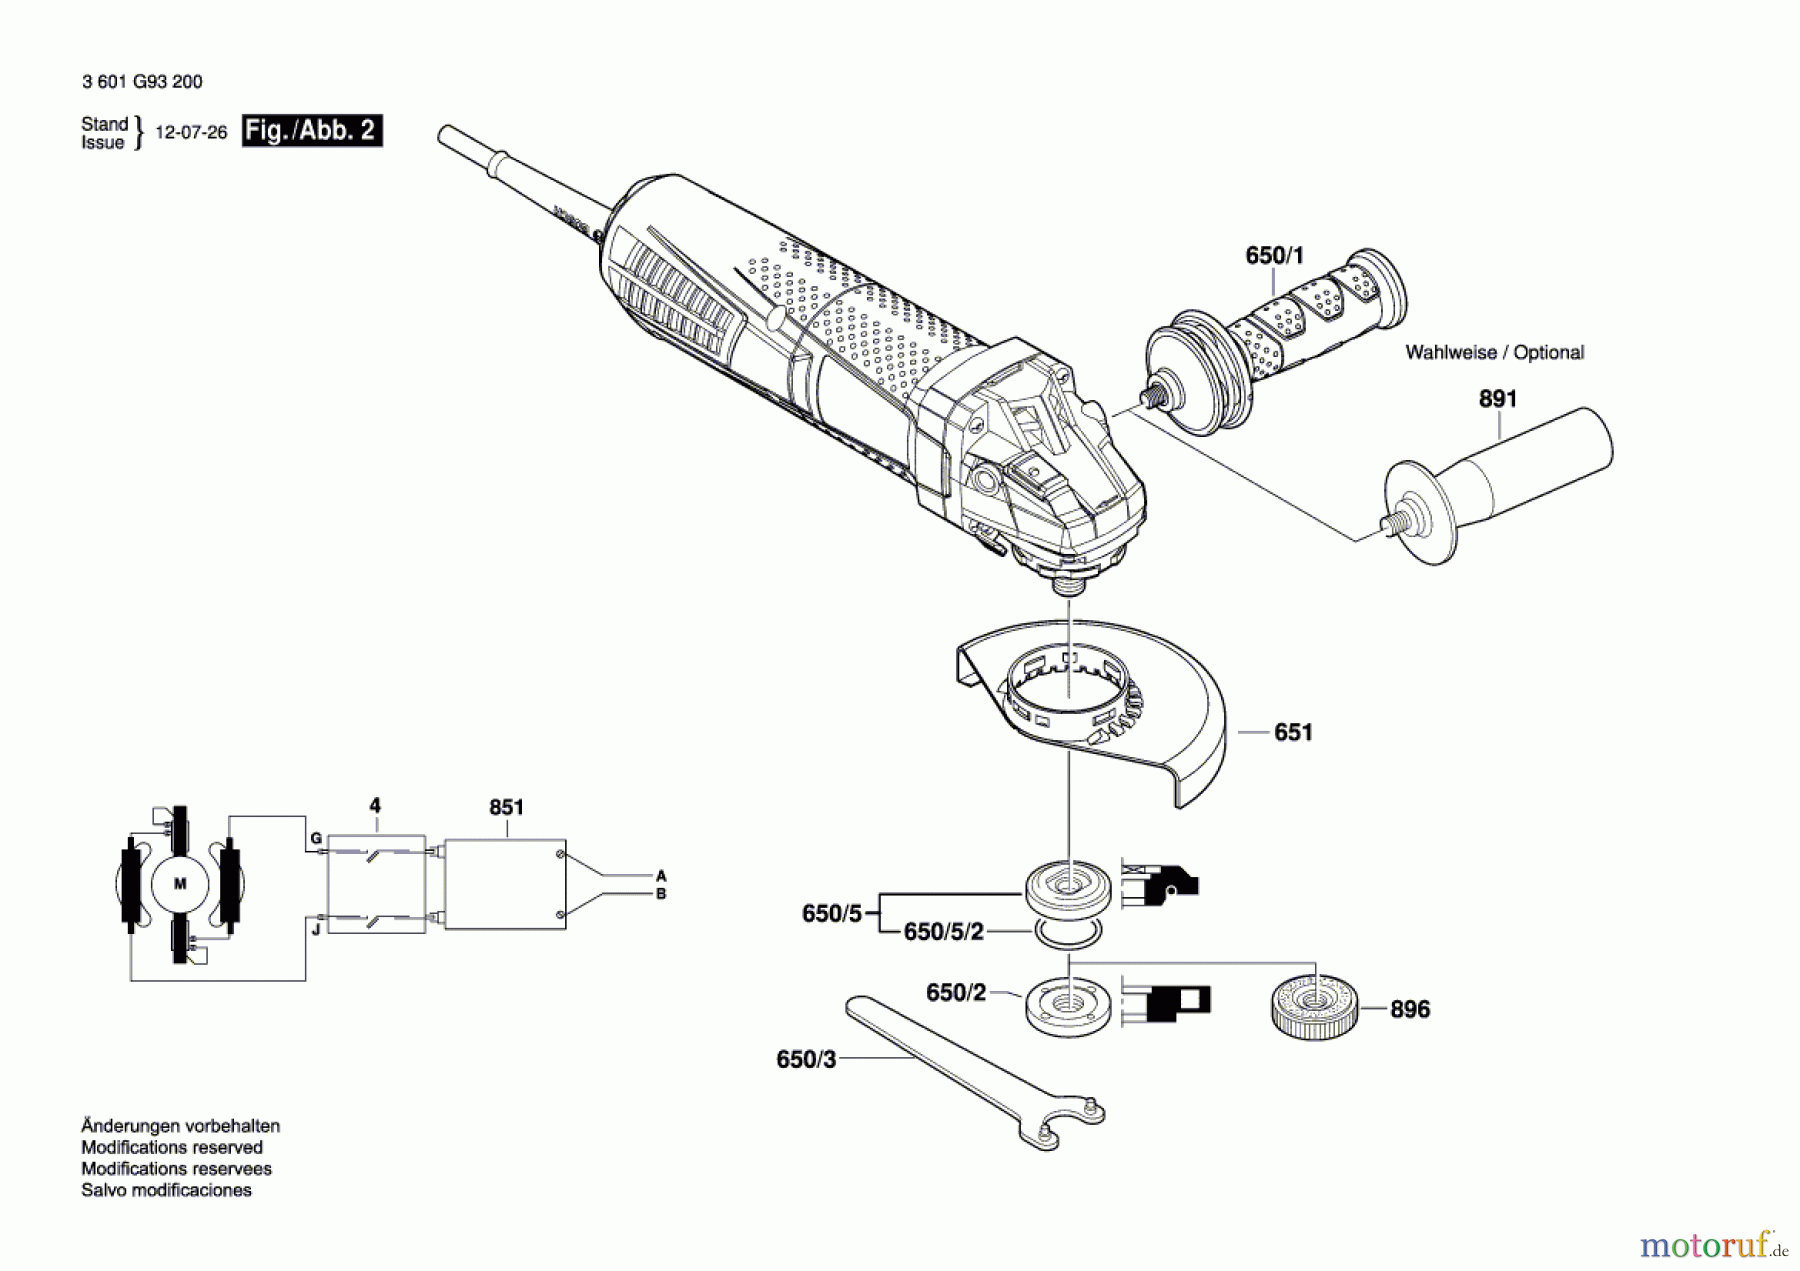  Bosch Werkzeug Winkelschleifer GWS 12-125 CIP Seite 2